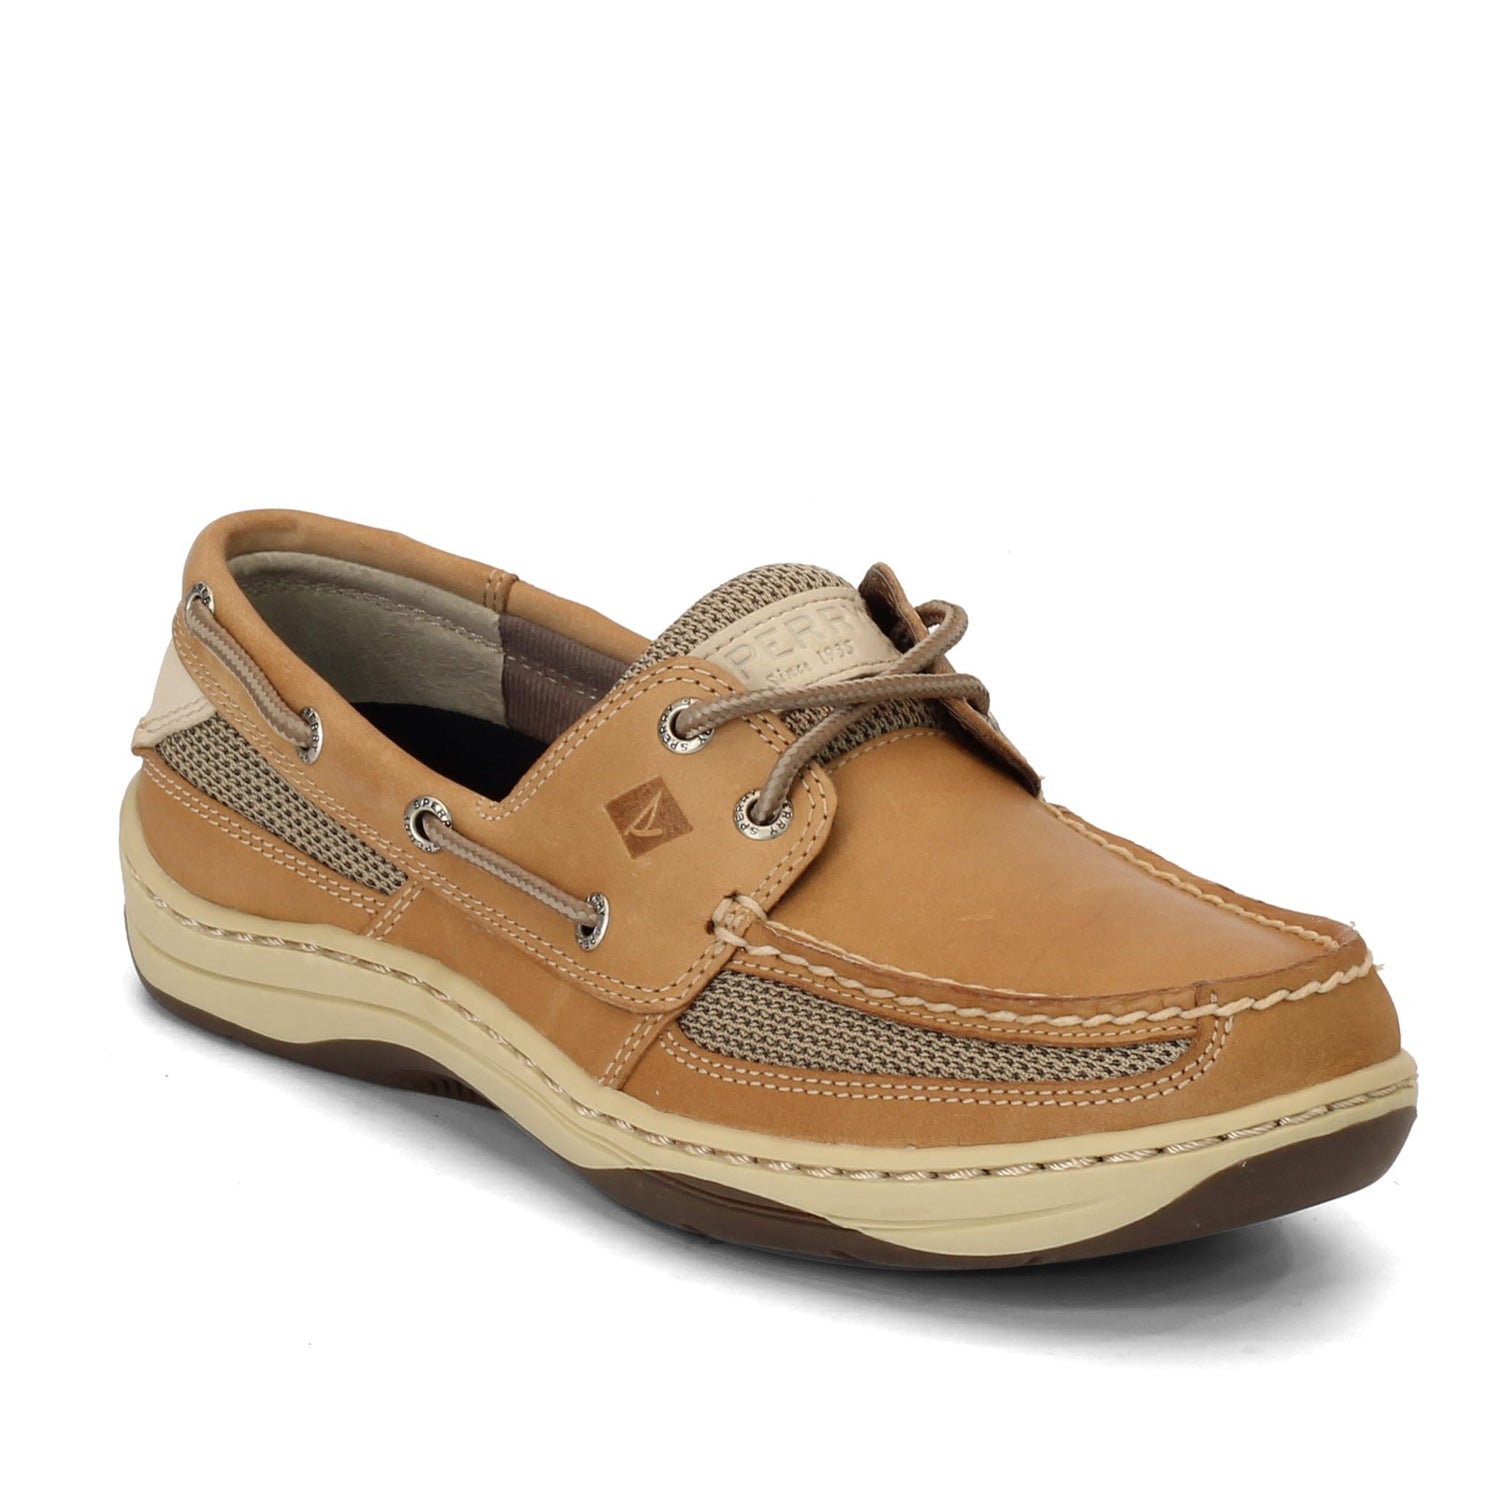 Peltz Shoes  Men's Sperry Tarpon 2-Eye Boat Shoes Tan/Beige 0771246